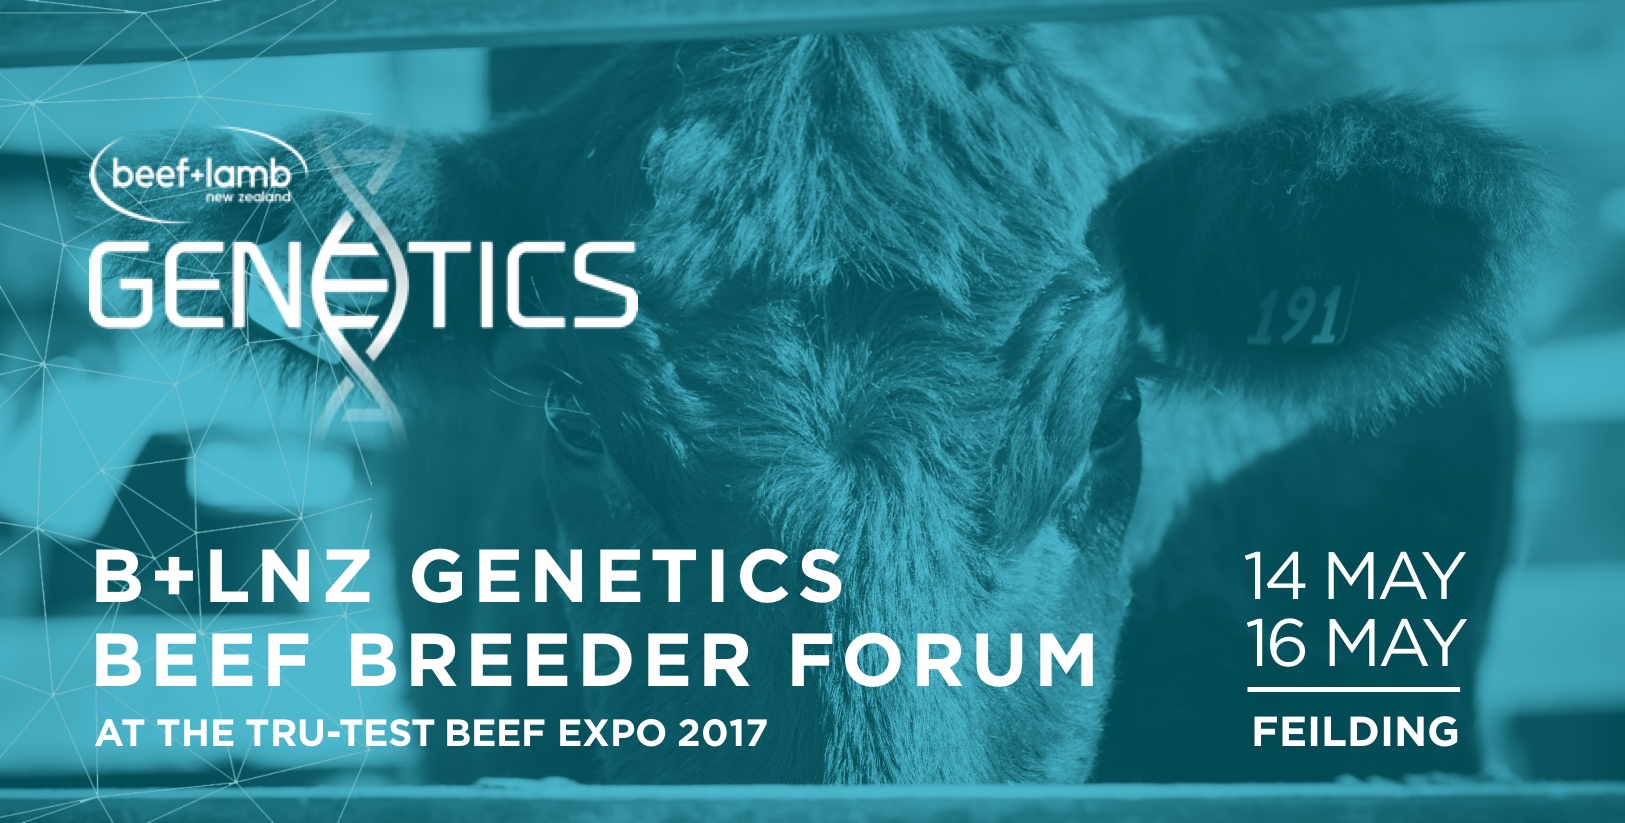 B+LNZ Genetics Beef Breeder Forum 2017